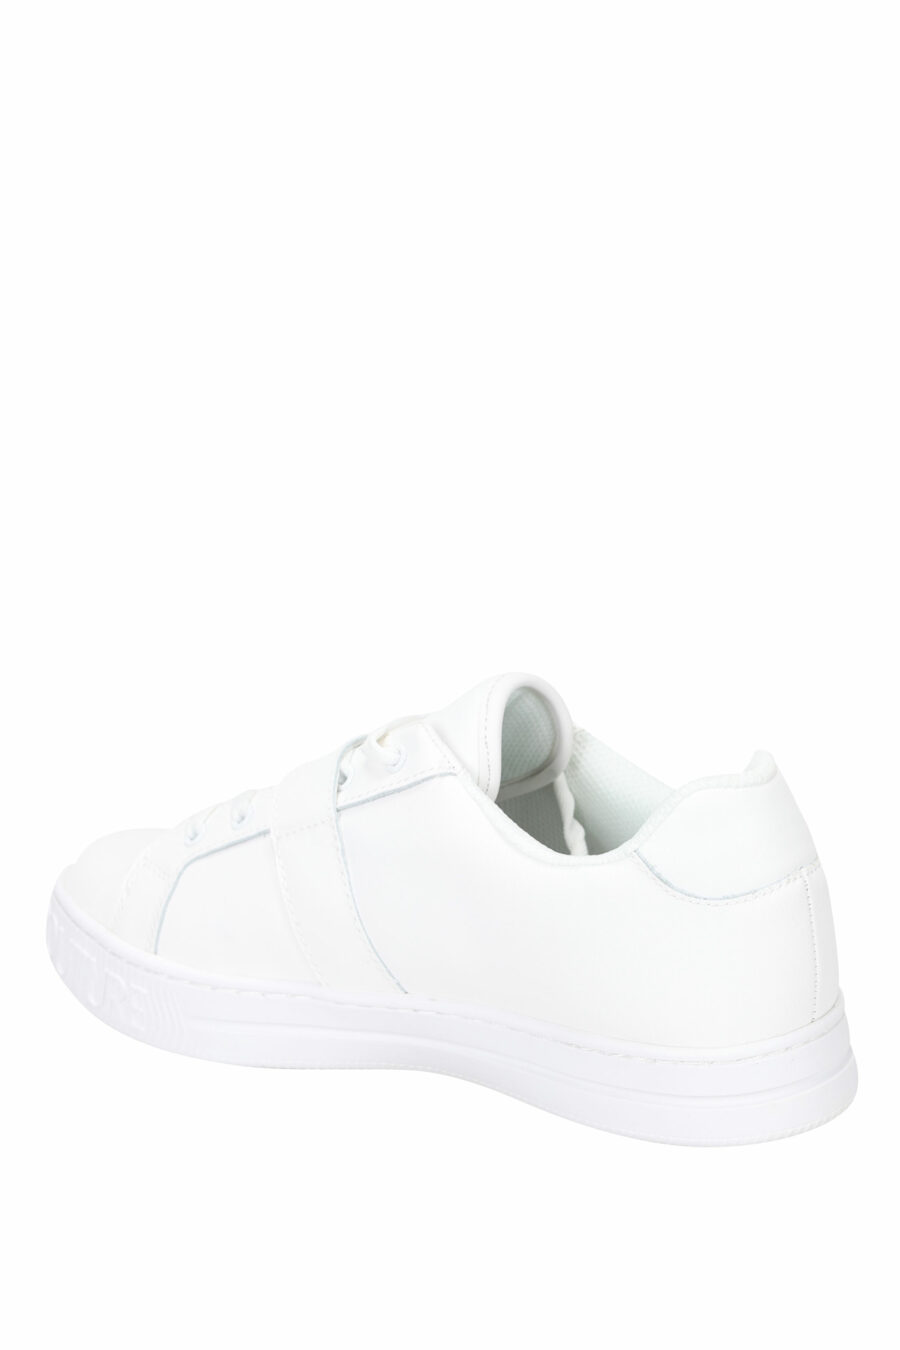 Zapatillas blancas con hebilla barroca - 8052019452815 3